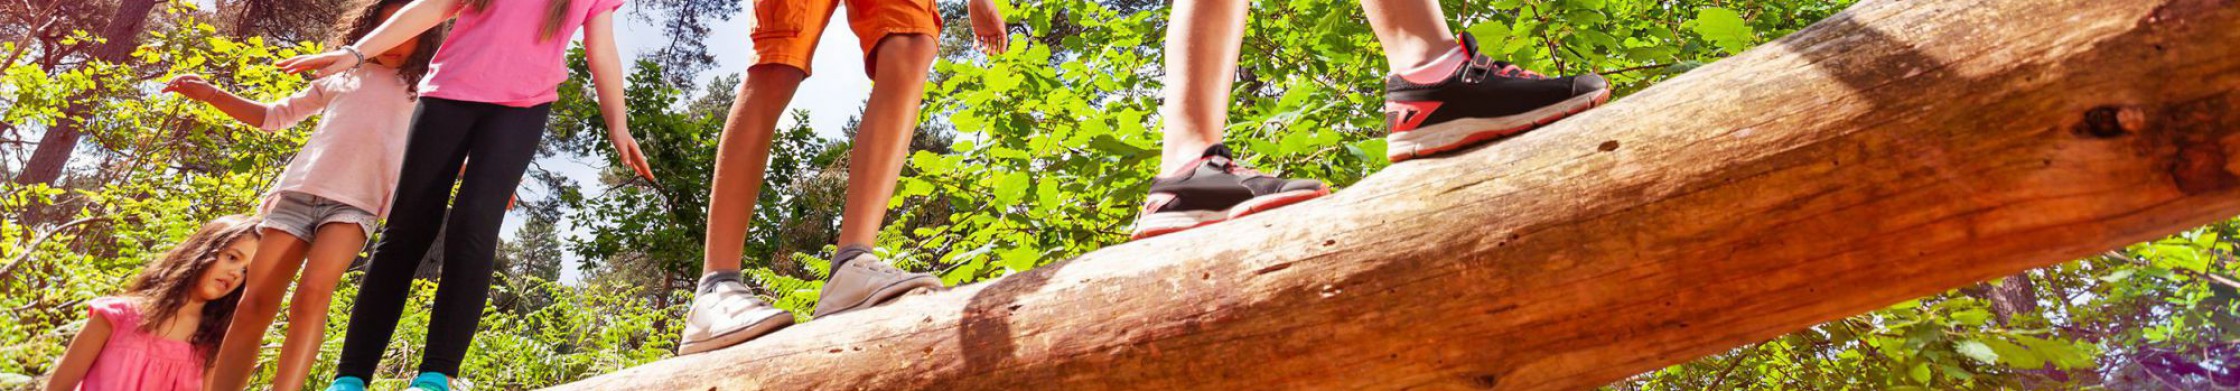 Kinder balancieren auf einem Baumstamm